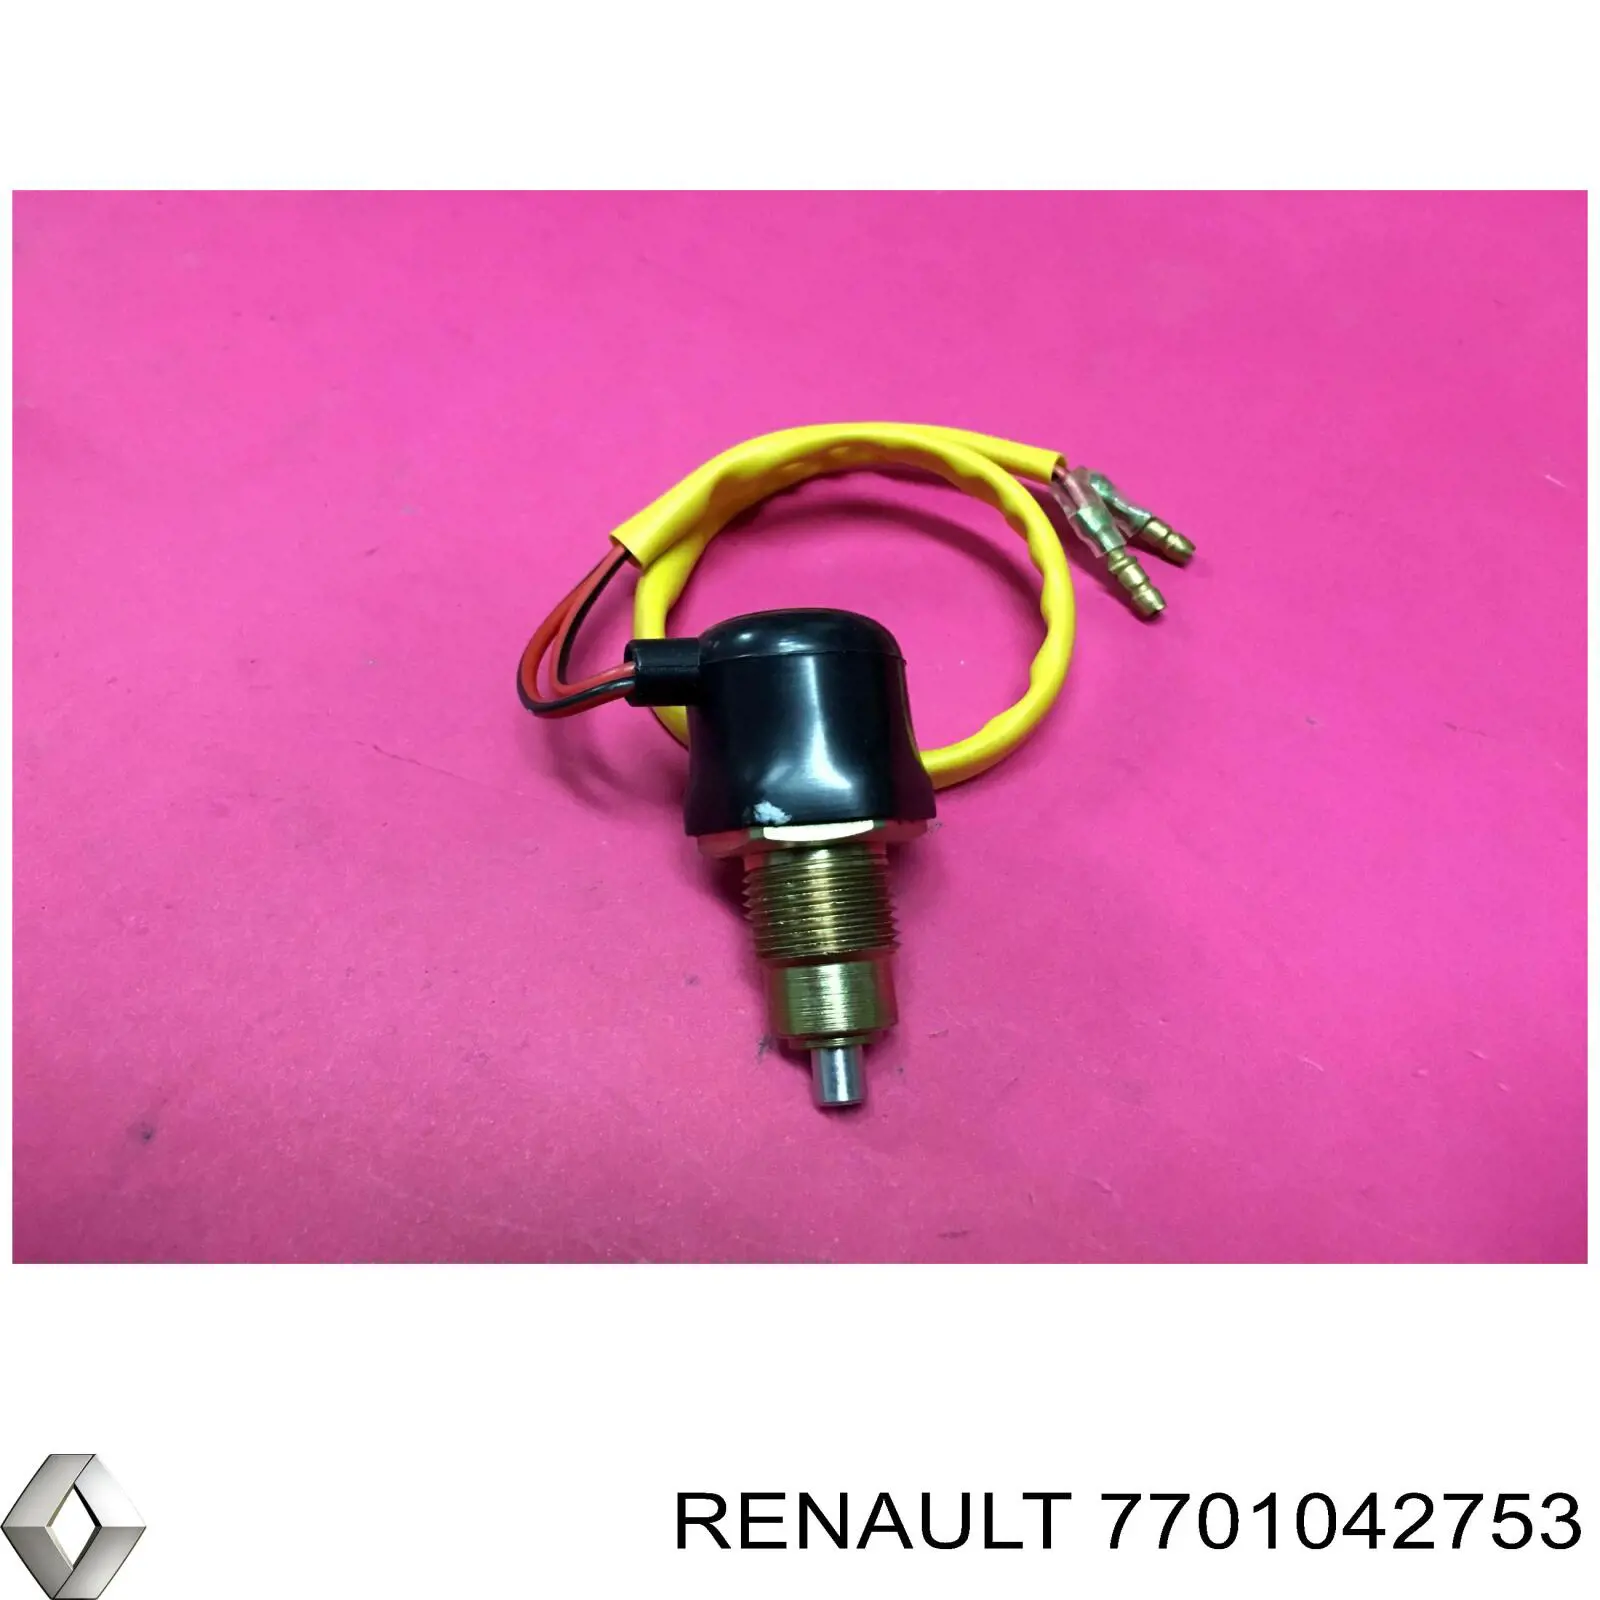 7701042753 Renault (RVI) corte, inyección combustible